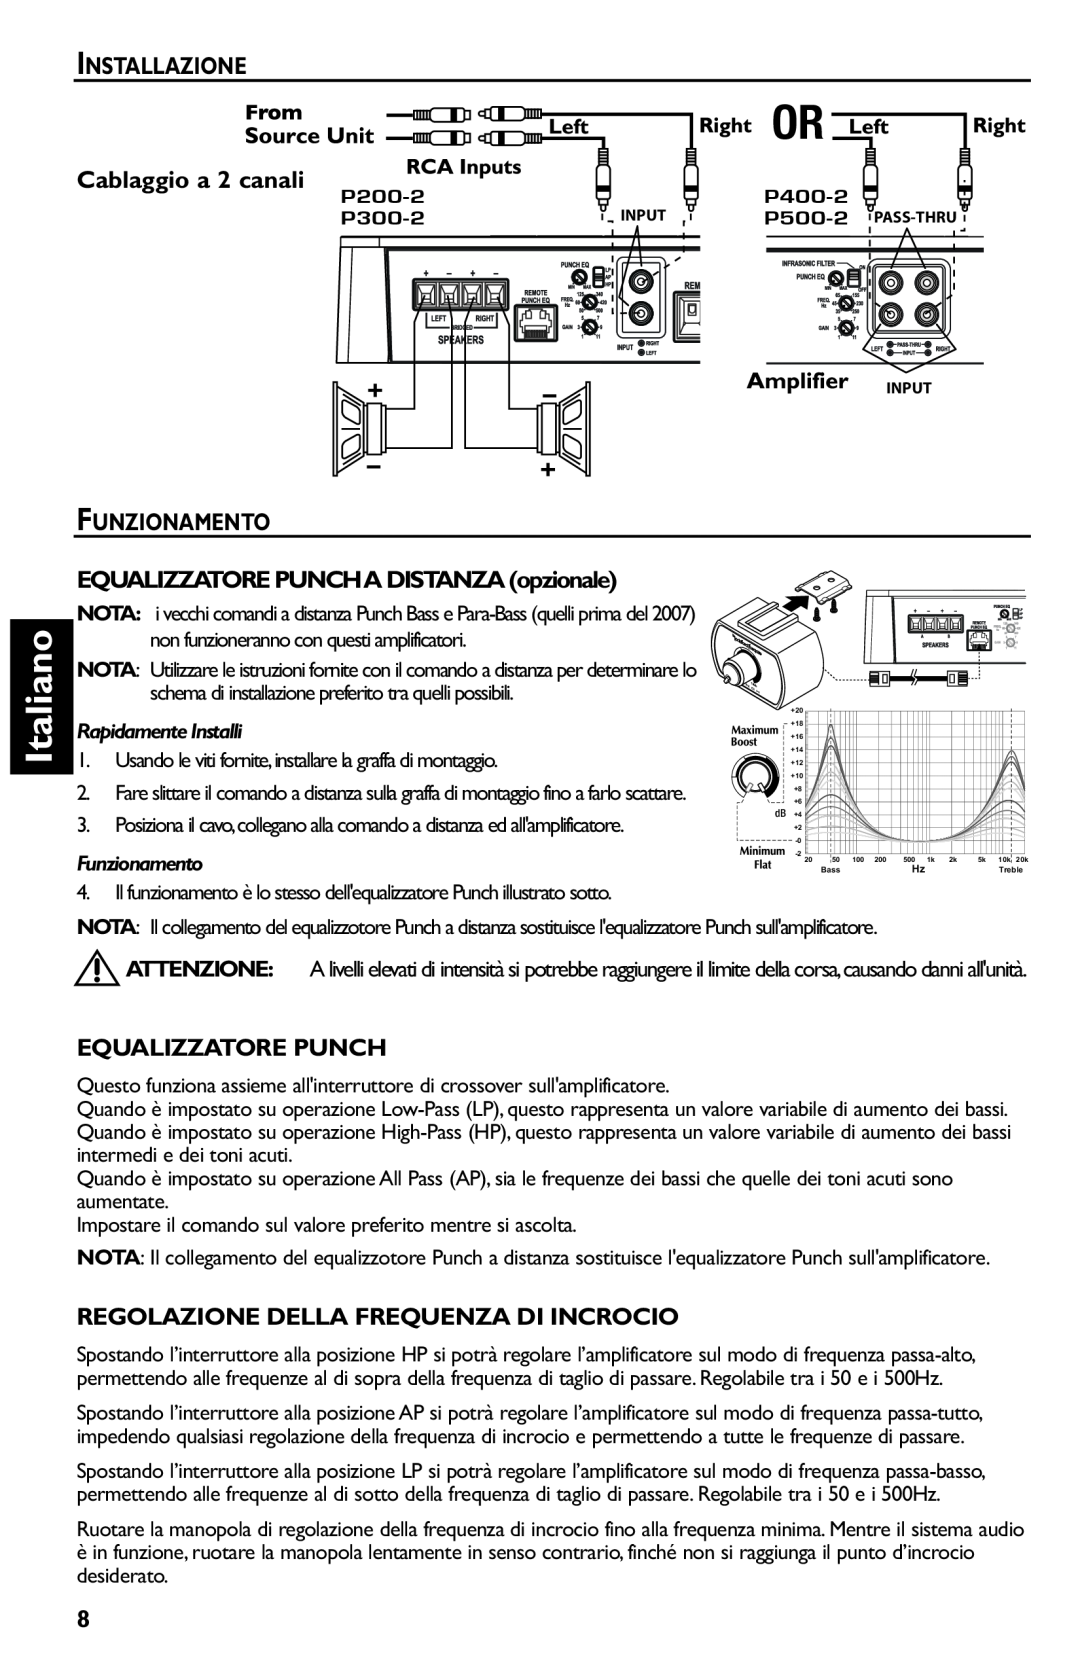 Rockford Fosgate p3002 manual Italiano, Installazione, Cablaggio a 2 canali, Funzionamento, Equalizzatore Punch 